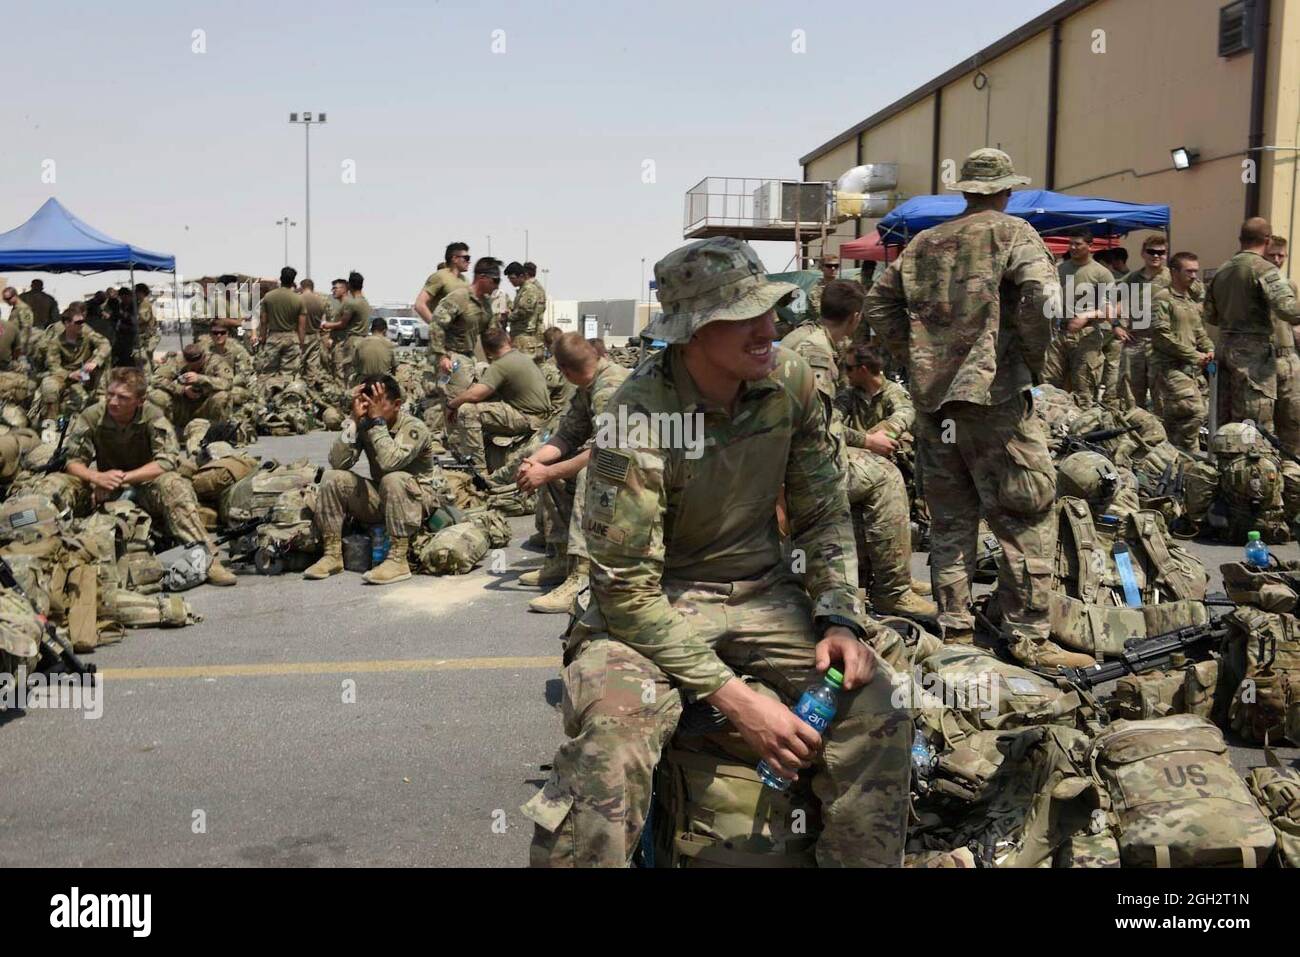 Soldados de la División de Infantería de 34th con sede en Minnesota esperan más transporte poco después de su vuelo desde Kabul, Afganistán, desembarcado el 31 de agosto de 2021 en Kuwait. Conocidos como las Bulls Rojas, los soldados de la Guardia Nacional fueron algunos de los últimos militares estadounidenses que se marcharon de Afganistán. Foto de stock